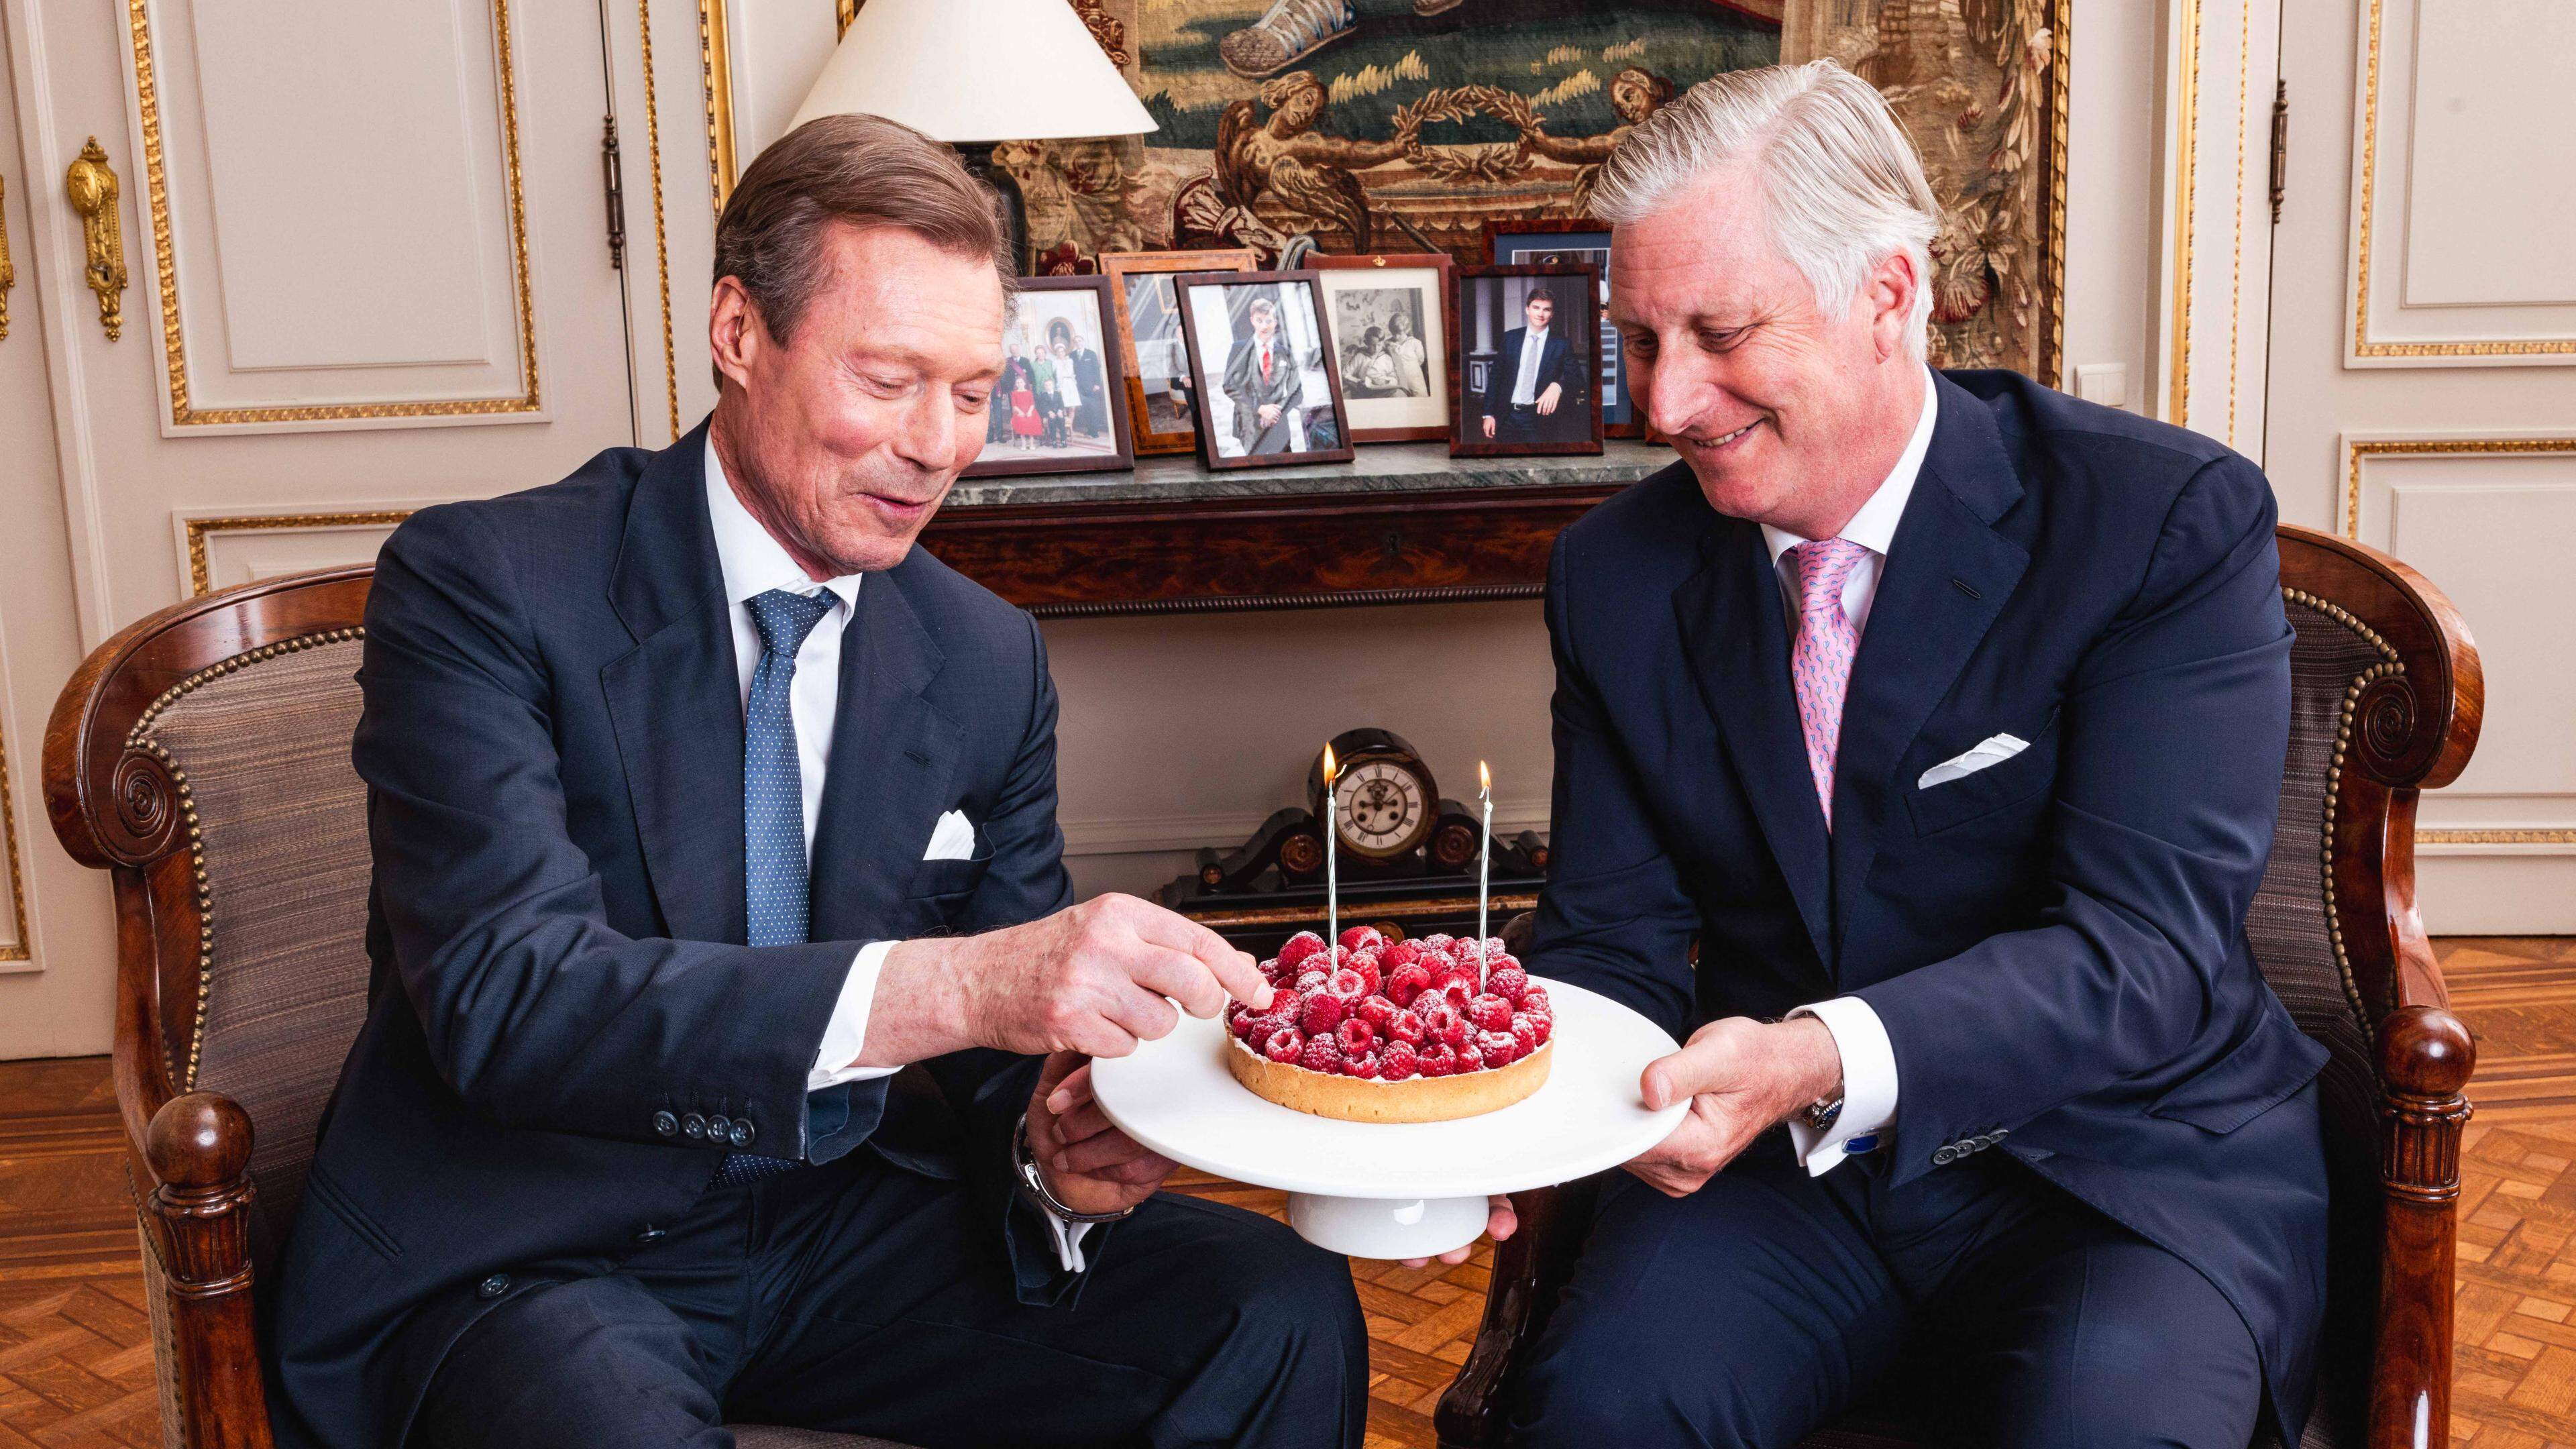 Le grand-duc Henri (69 ans ce mardi 16 avril) et le roi Philippe (64 ans ce 15 avril) ont partagé un gâteau pour célébrer leurs anniversaires.